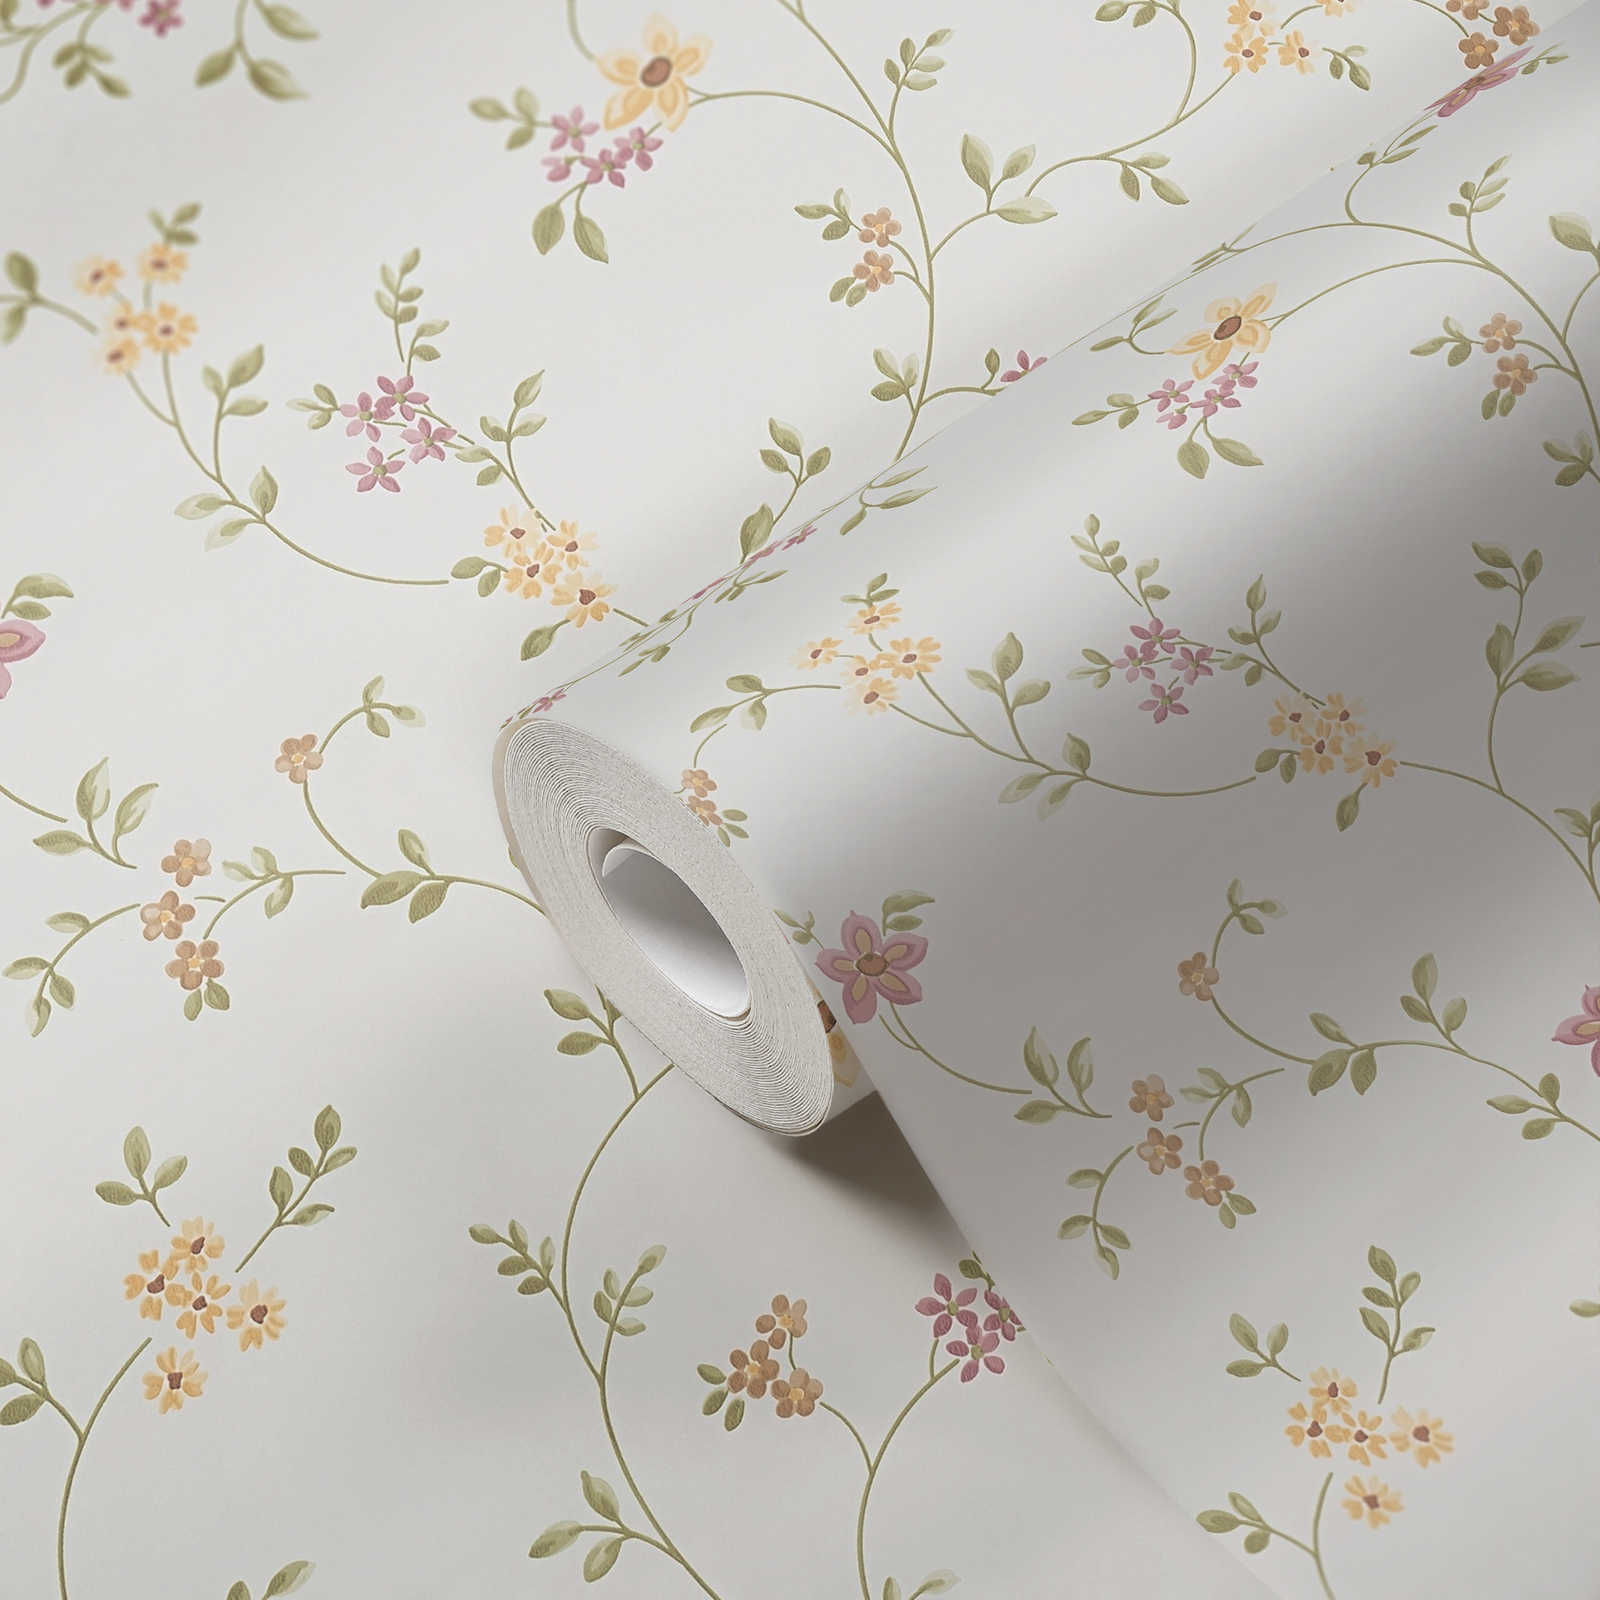             Zelfklevend behangpapier | Bloemenpatroon met subtiele ranken - crème, groen, beige
        